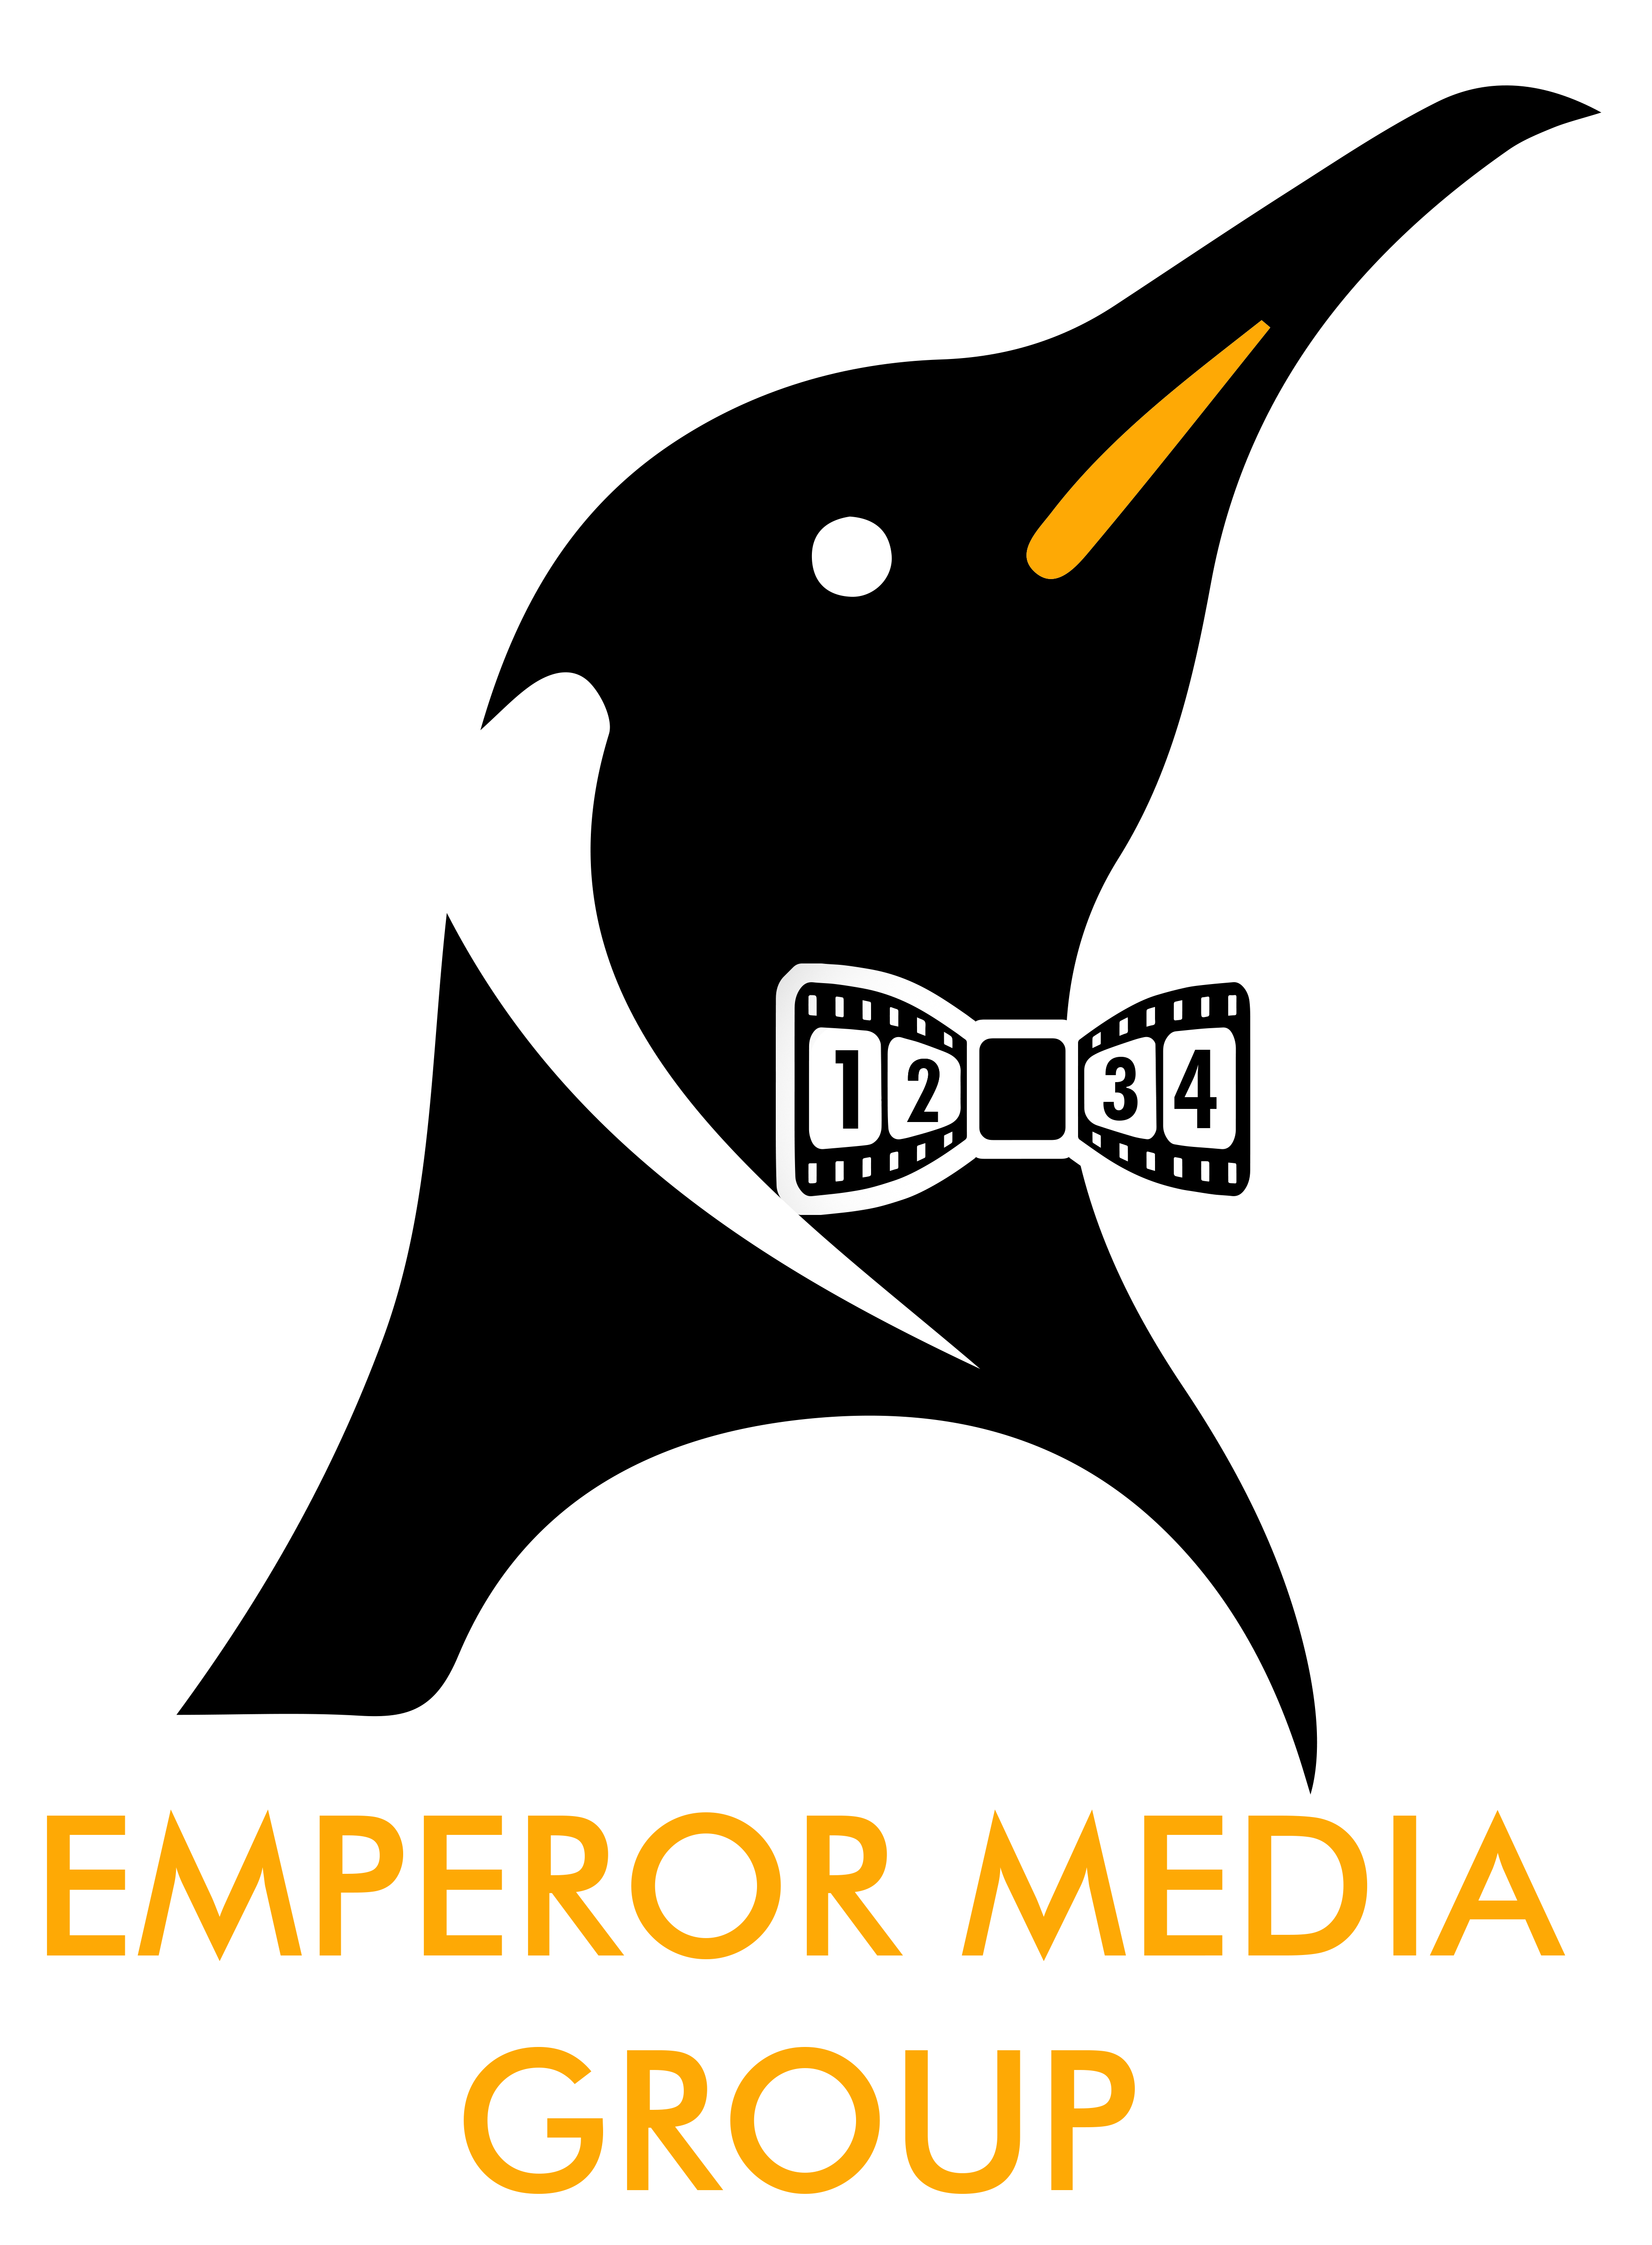 Emperor Media Group